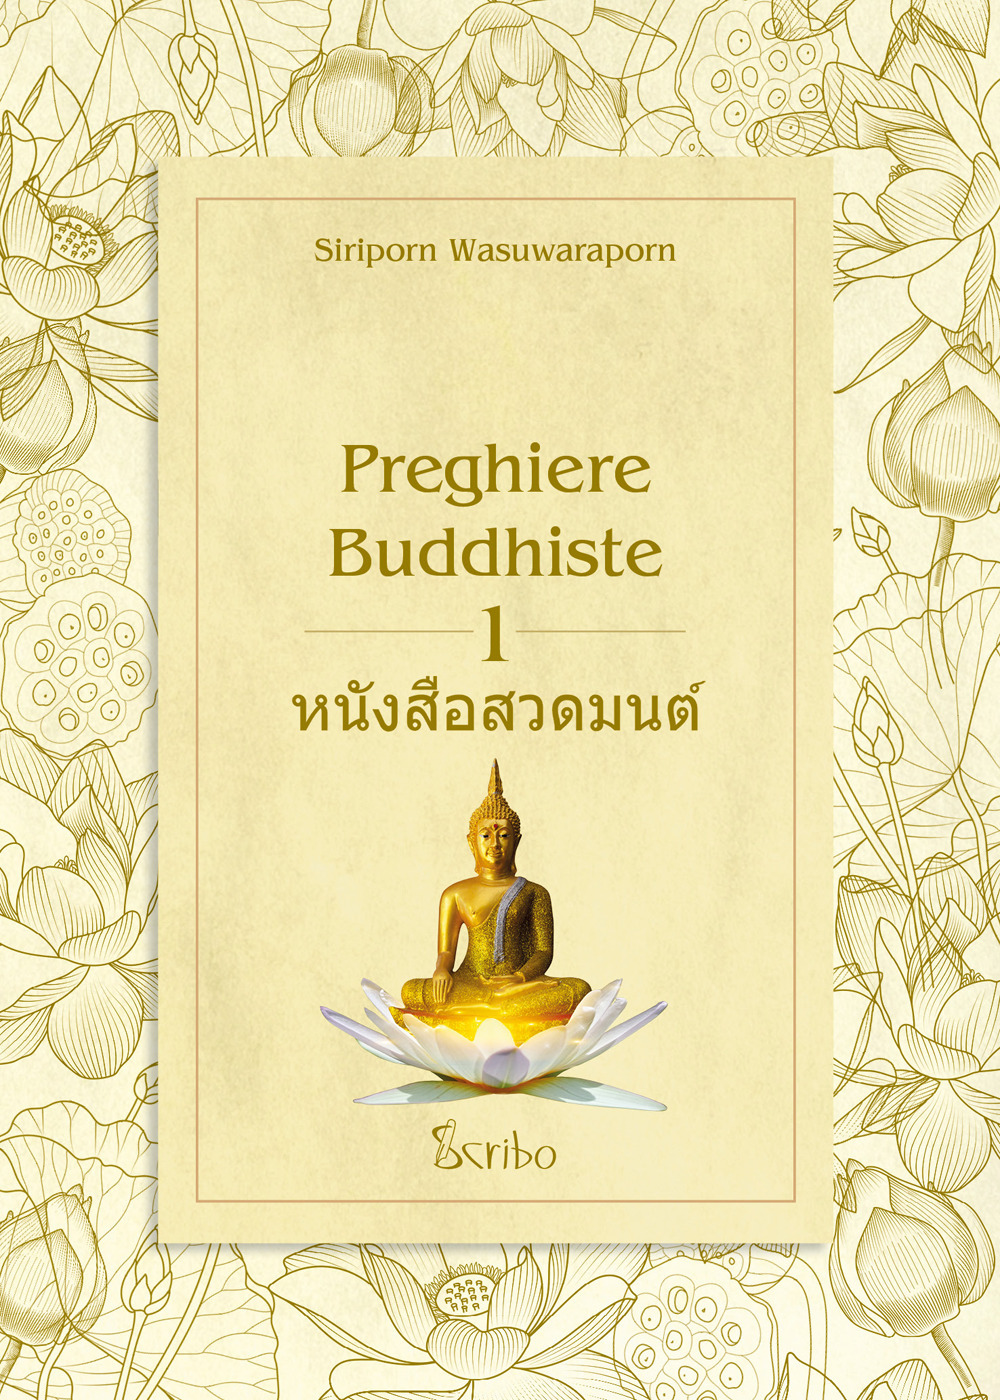 Preghiere buddhiste. Vol. 1